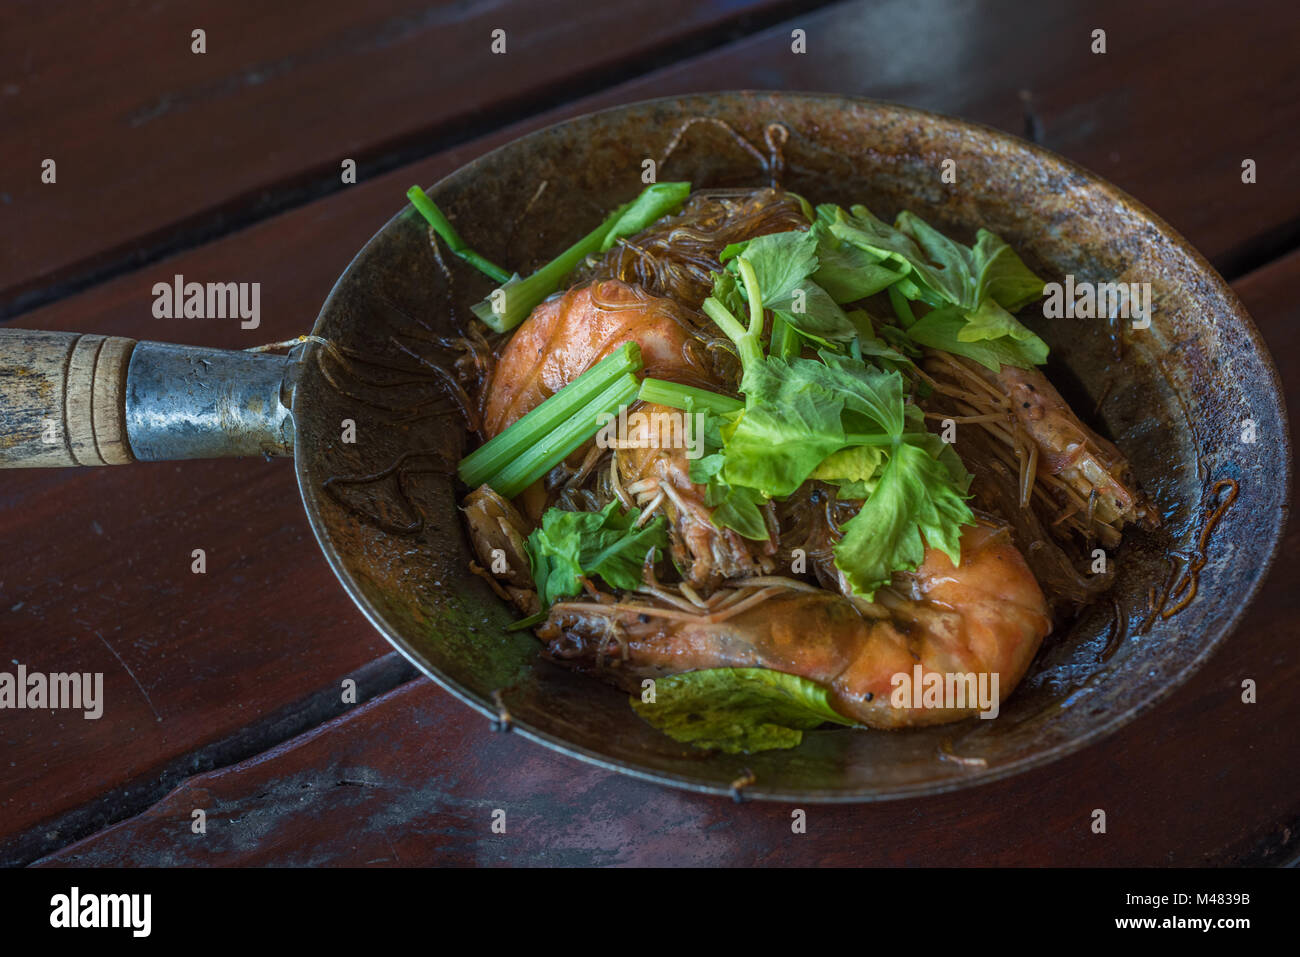 Gamberi cotti al forno con vetro tagliatelle, autentica cucina tailandese Foto Stock